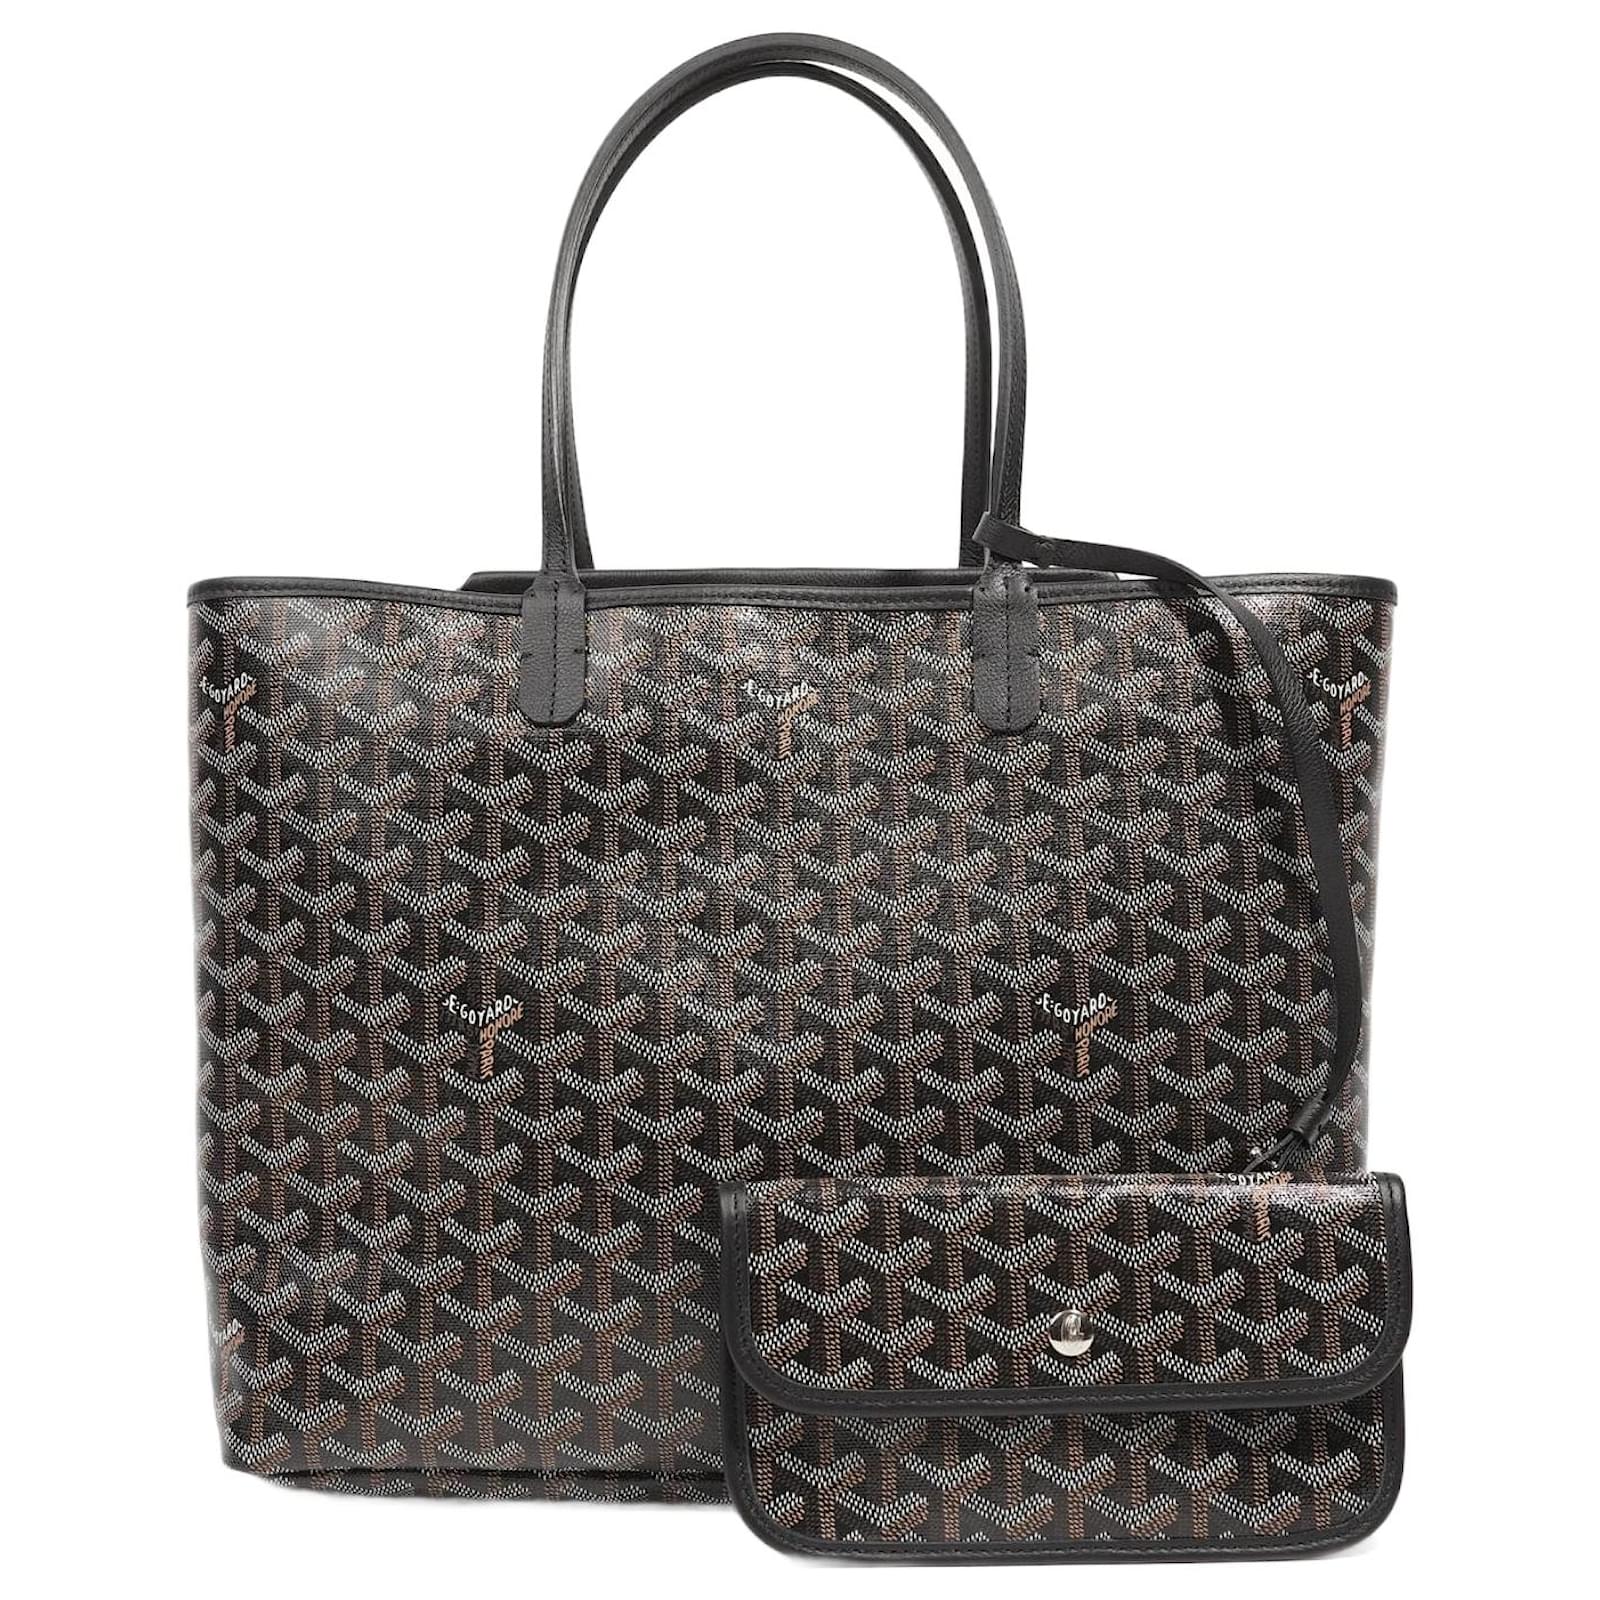 GOYARD Handbags Goyard Leather For Female for Women